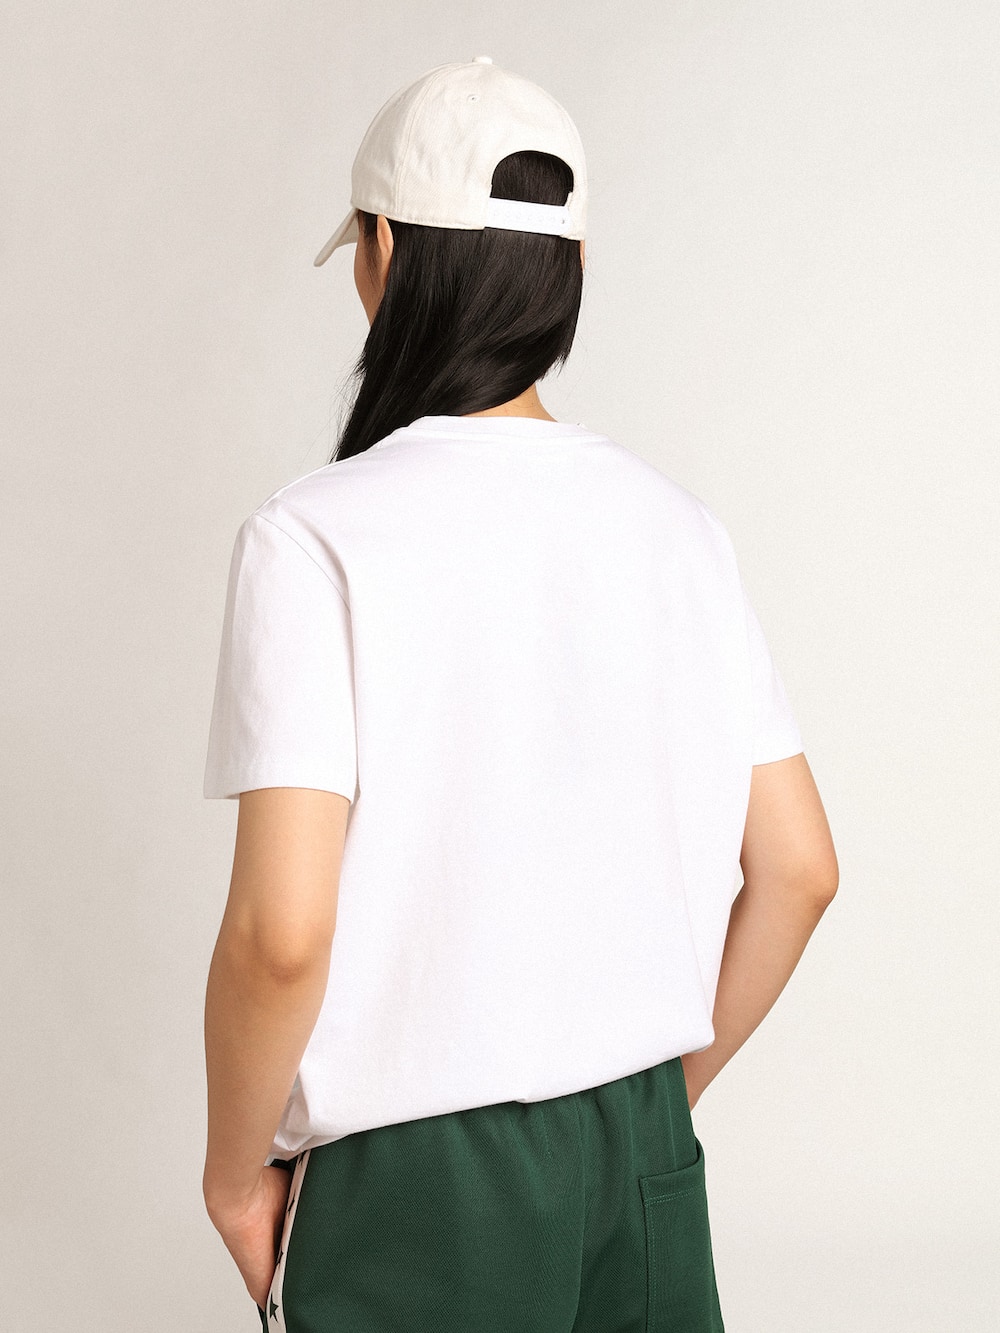 Golden Goose - T-shirt femme blanc avec étoile verte sur le devant in 